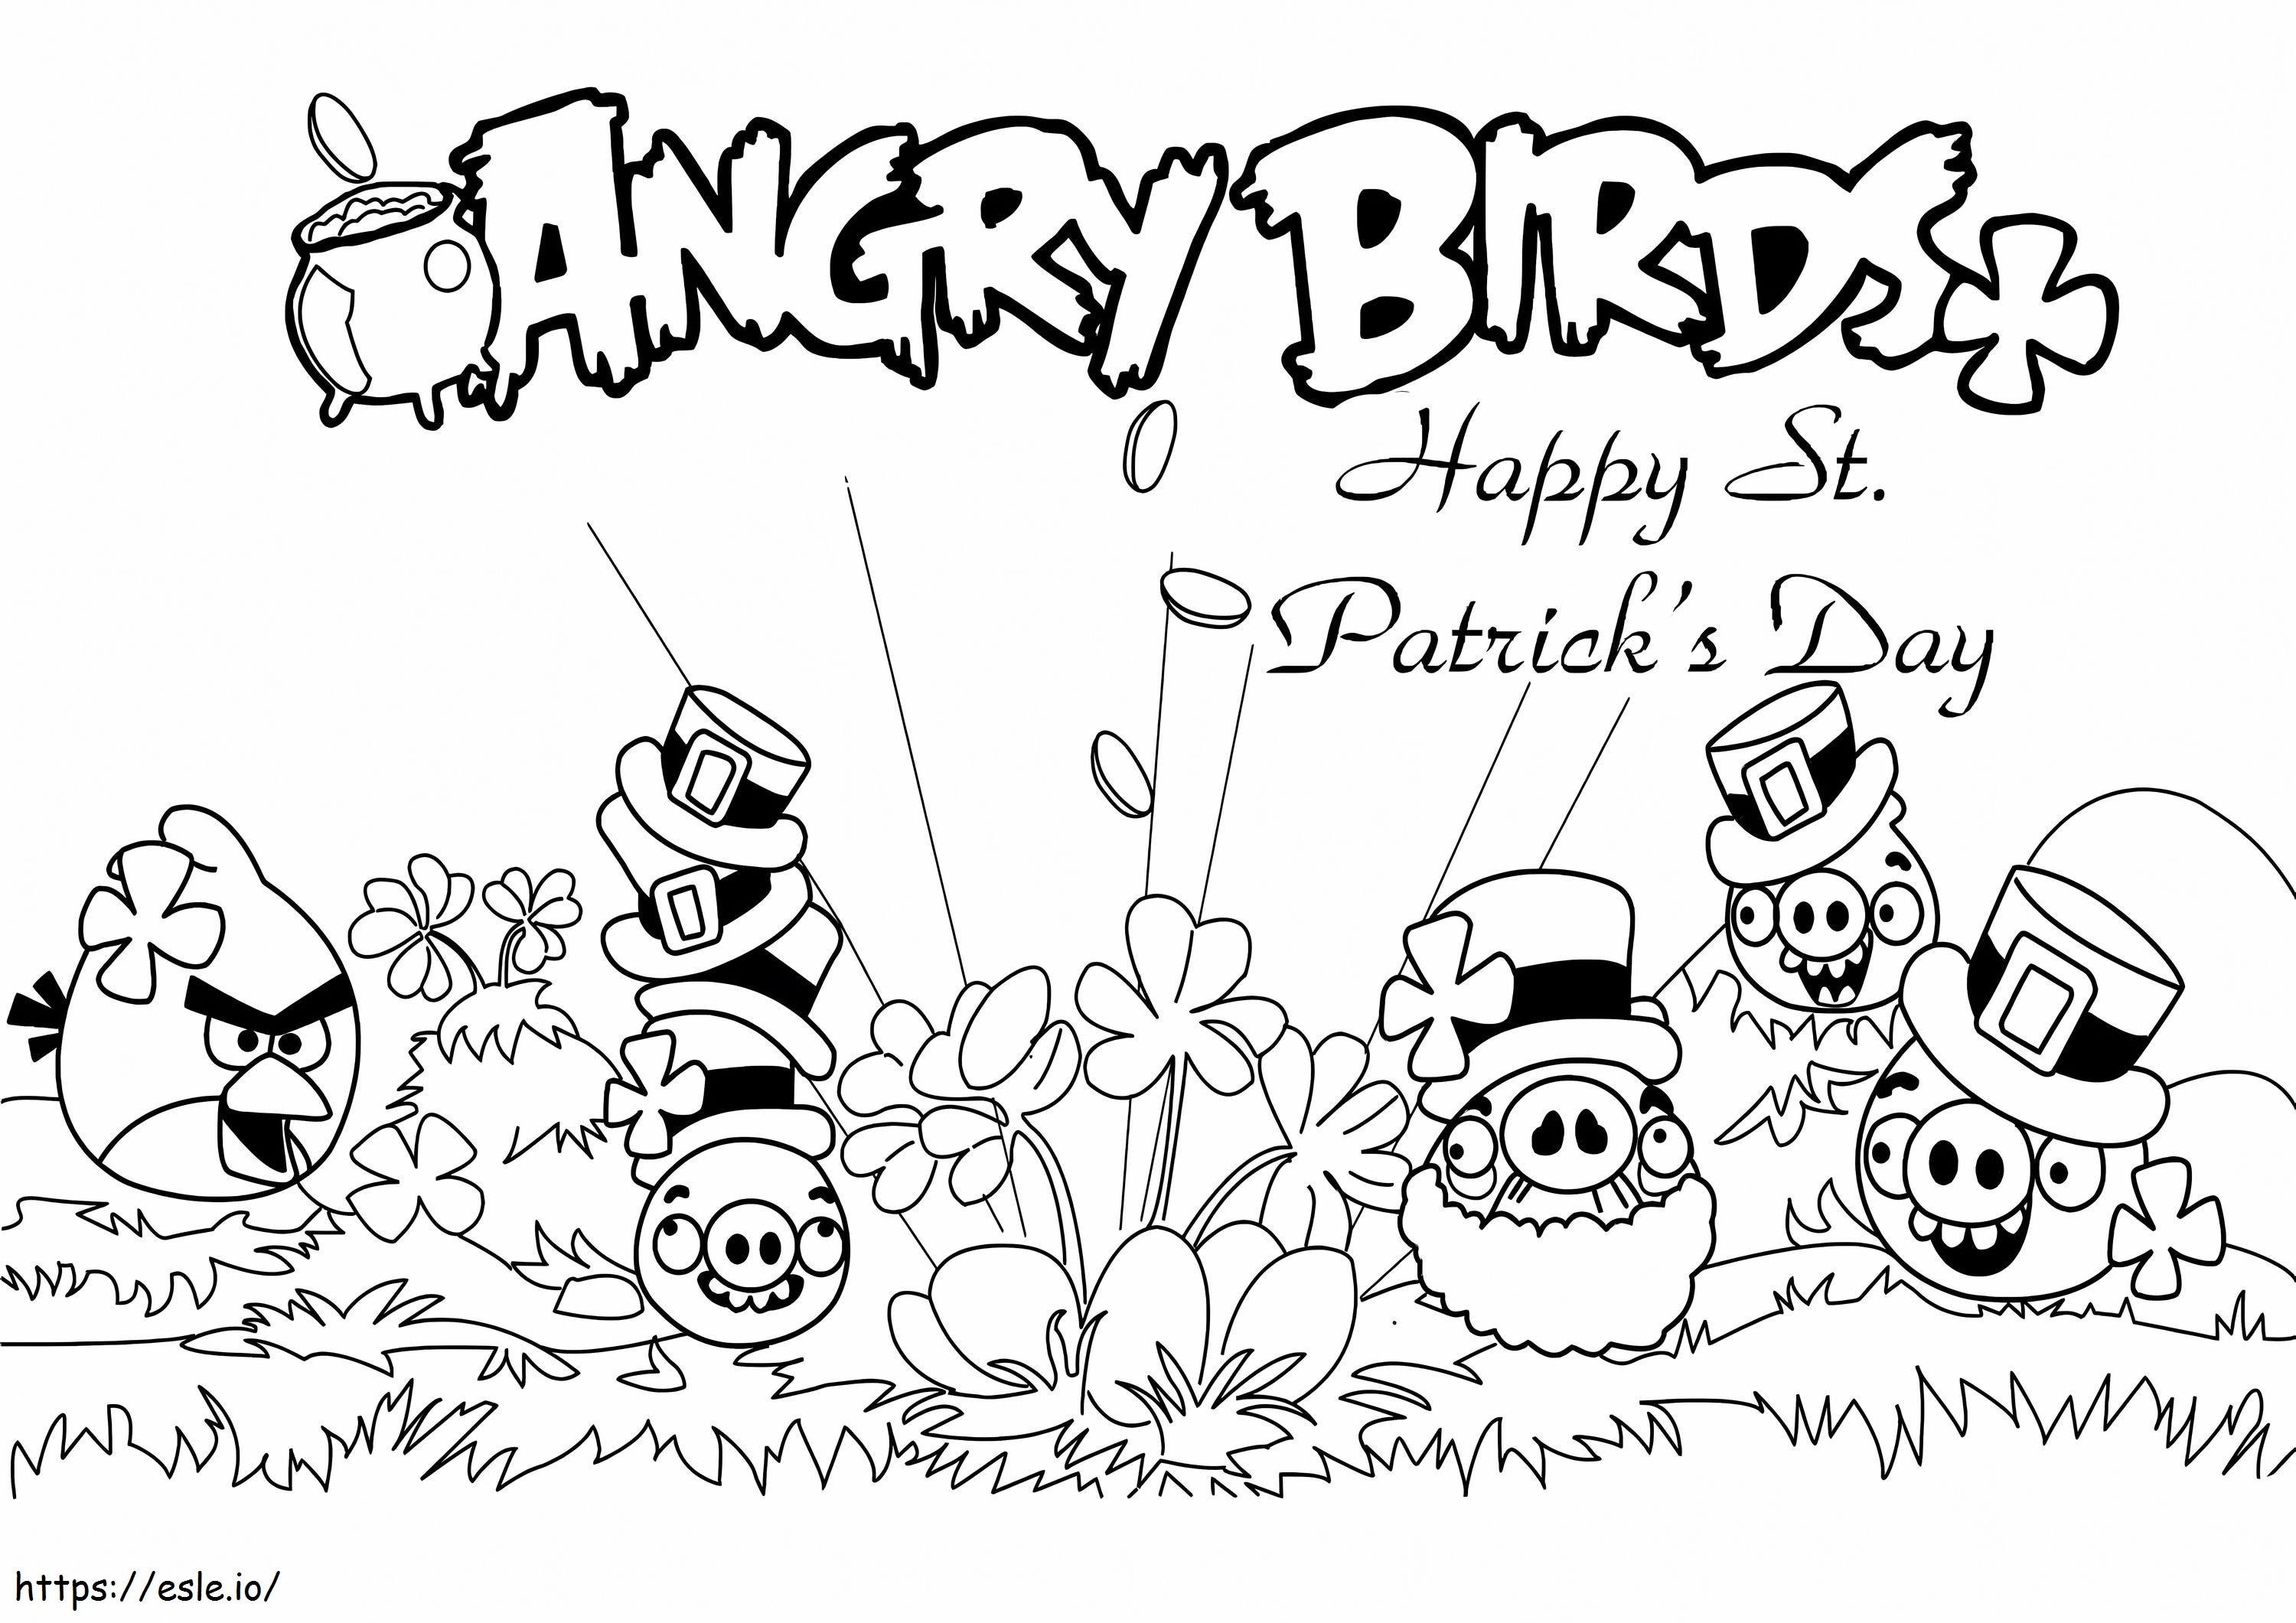 Coloriage Angry Birds Joyeuse Saint-Patrick à imprimer dessin